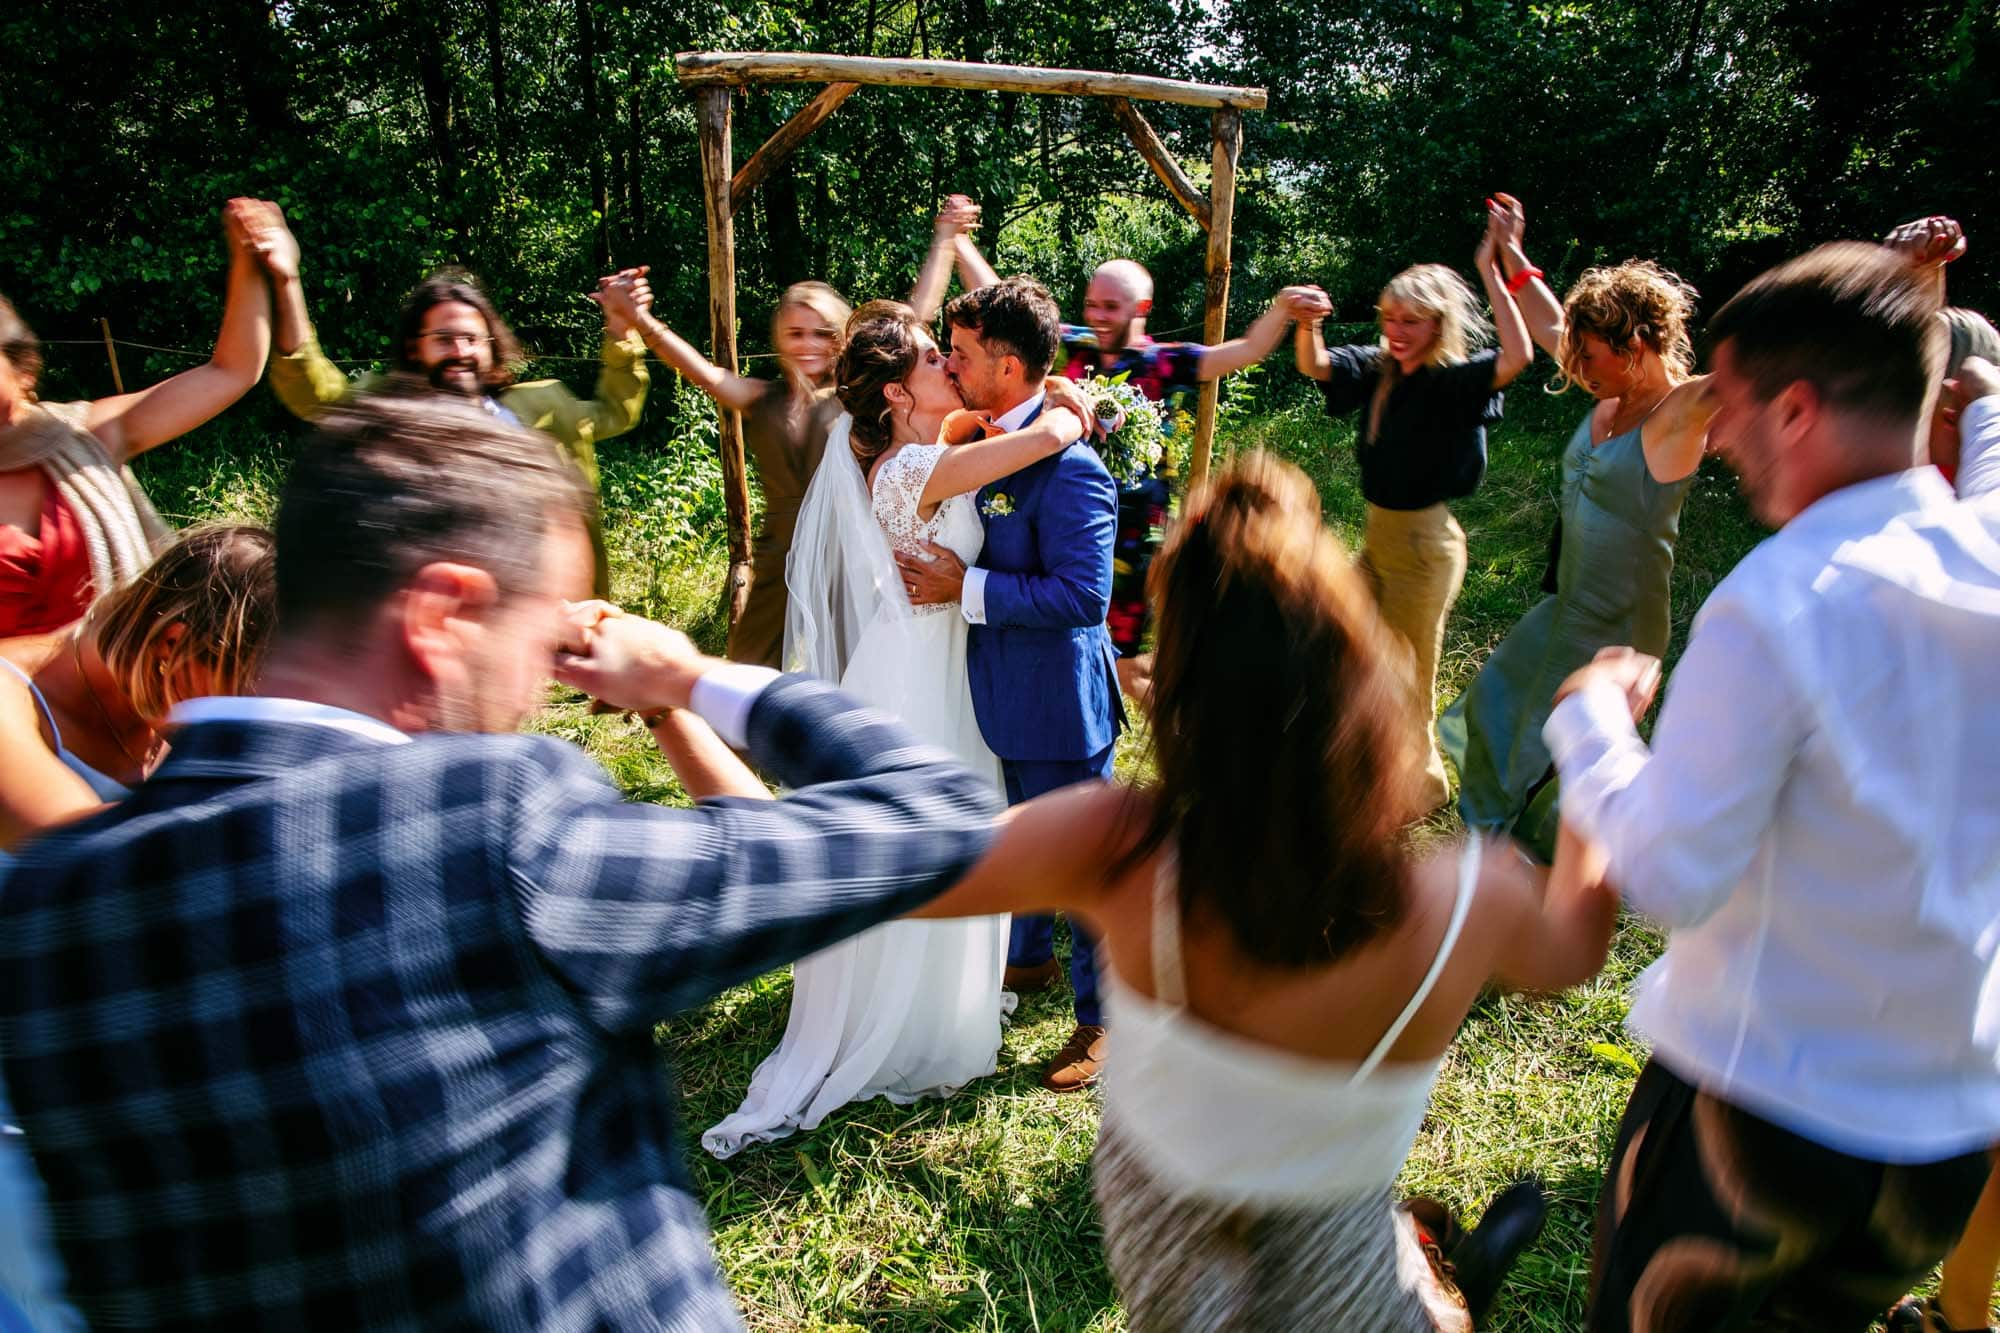 bijzondere trouwfoto's Bruidspaar met gasten die om hen heen dansen. Trouwfotograaf Justin Manders